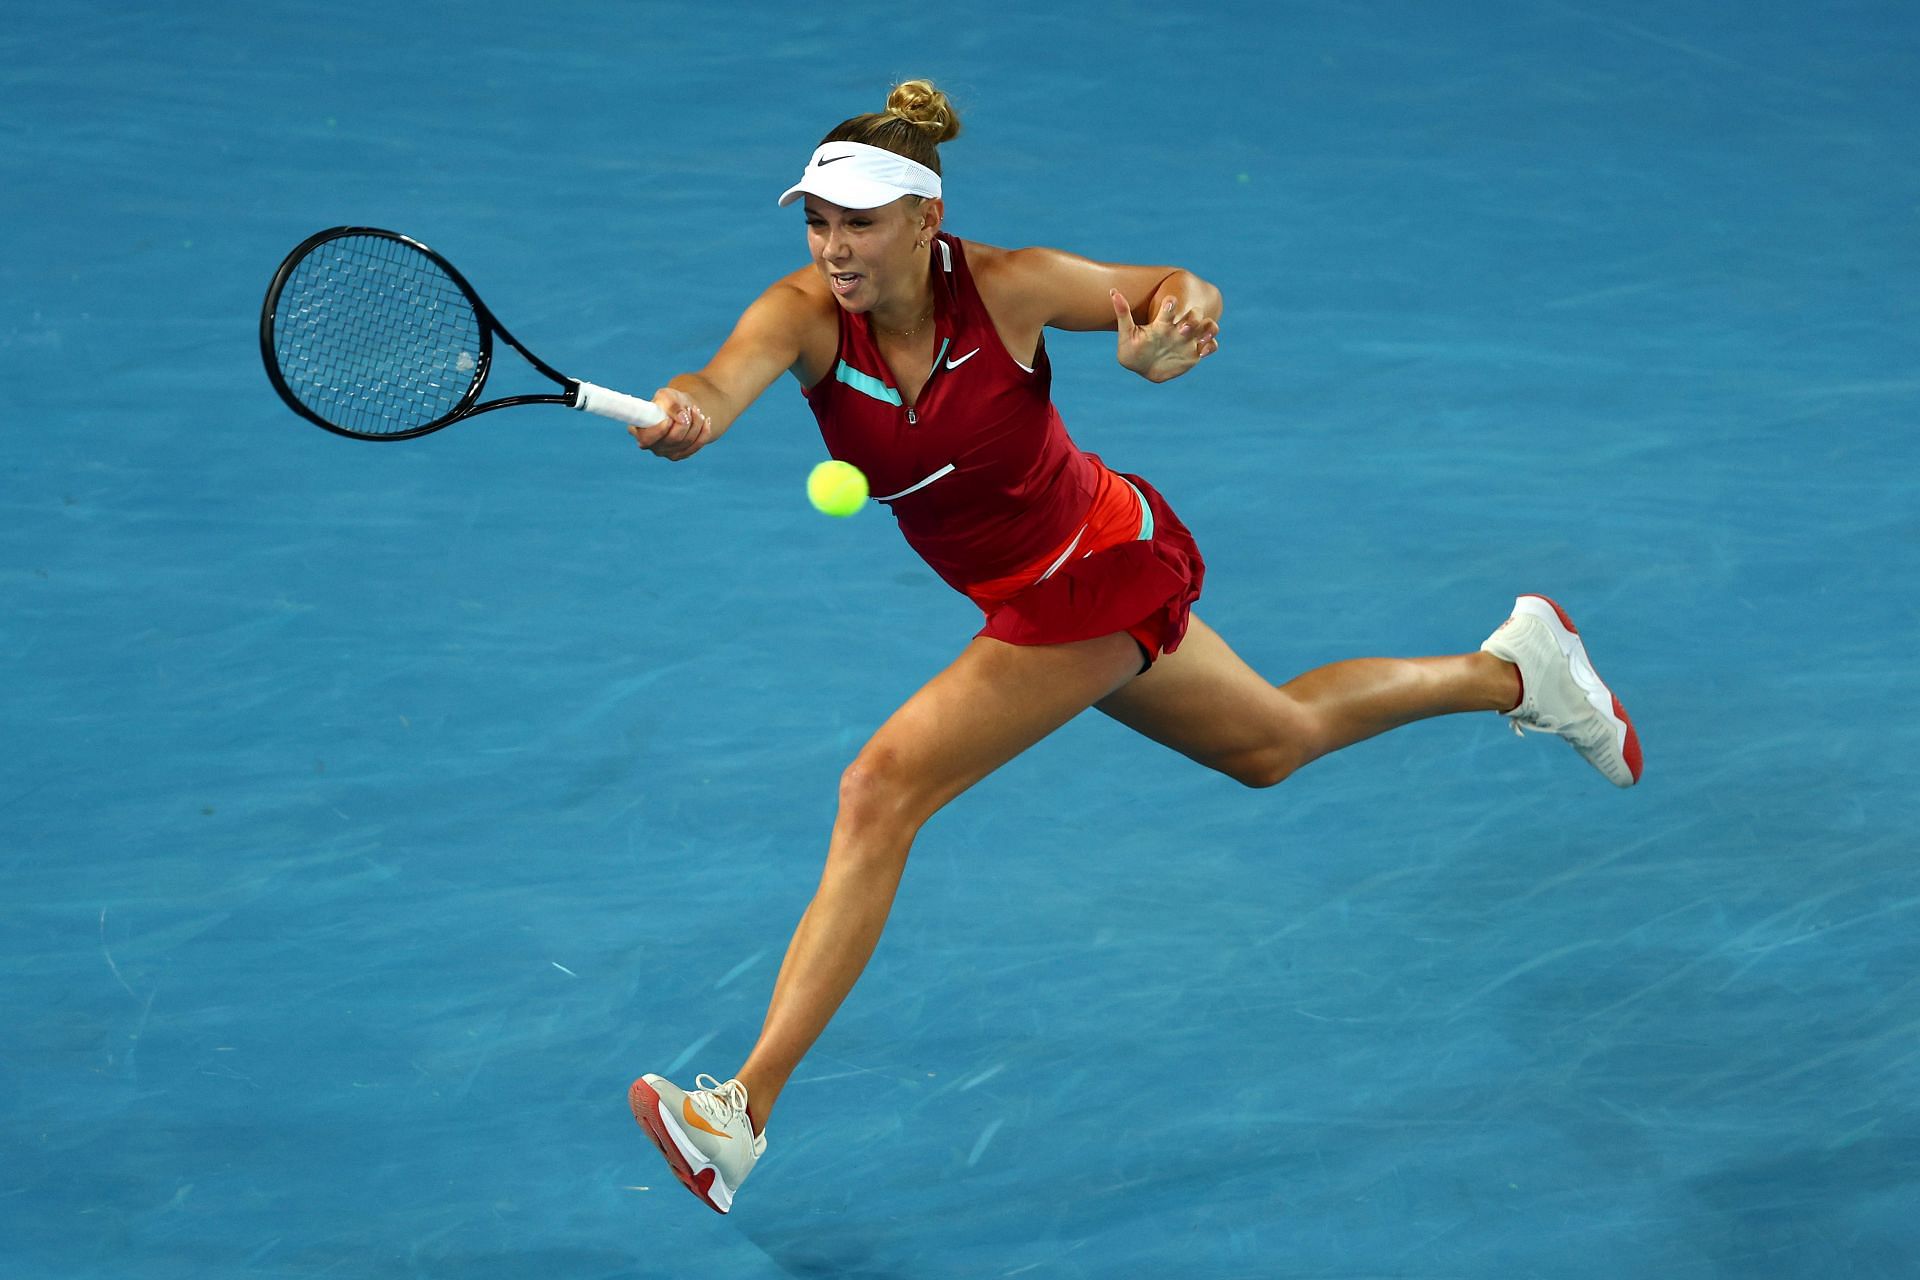 Amanda Anisimova in action at 2022 Australian Open